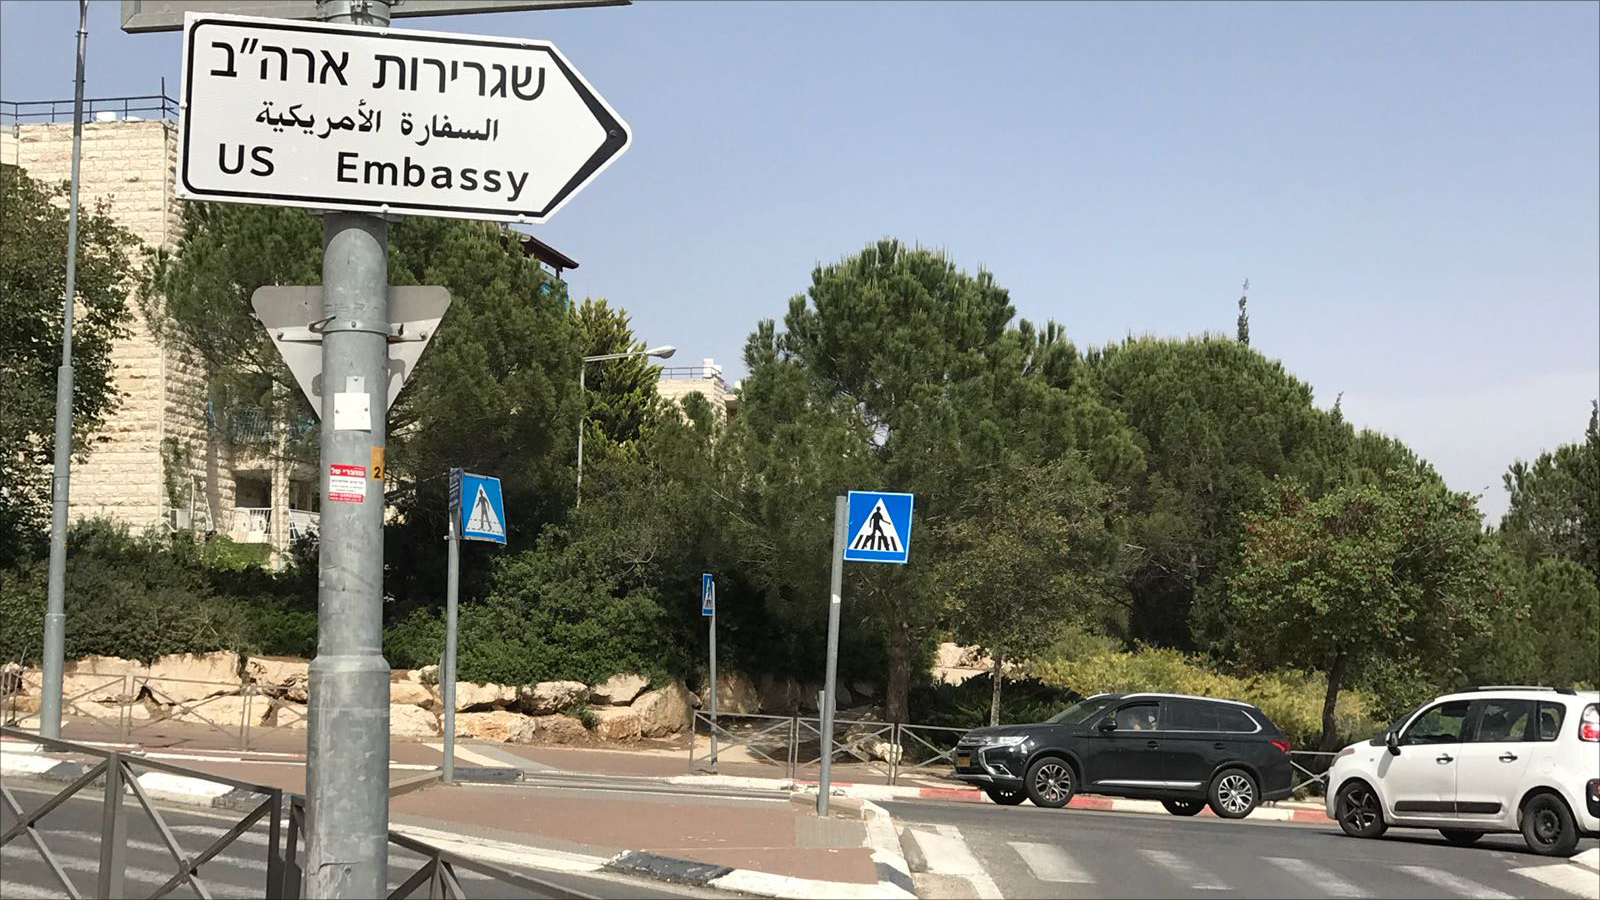 لافتات تشير إلى موقع السفارة الأميركية في القدس المحتلة (الجزيرة)